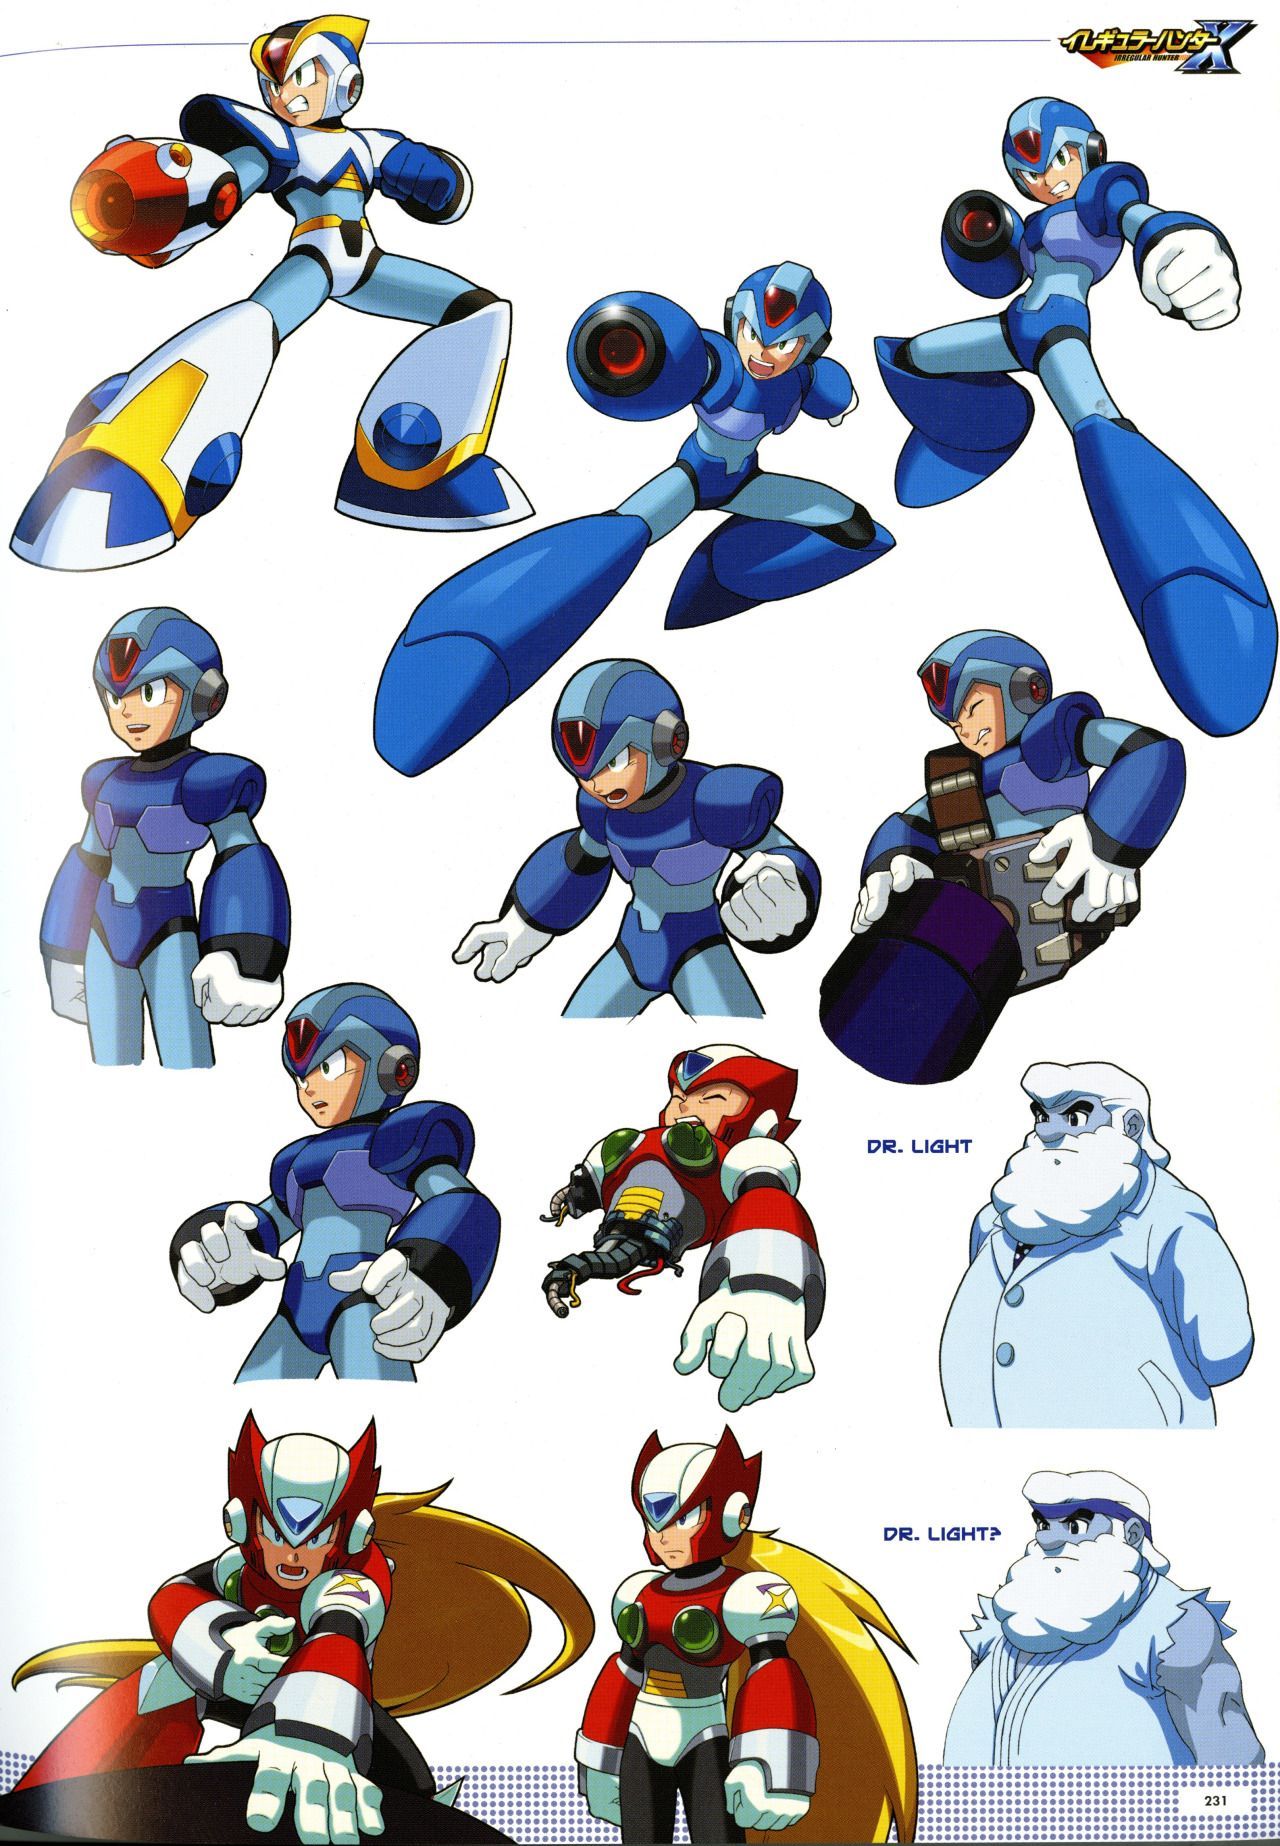 Mega Man X9 Wallpapers - Wallpaper Cave